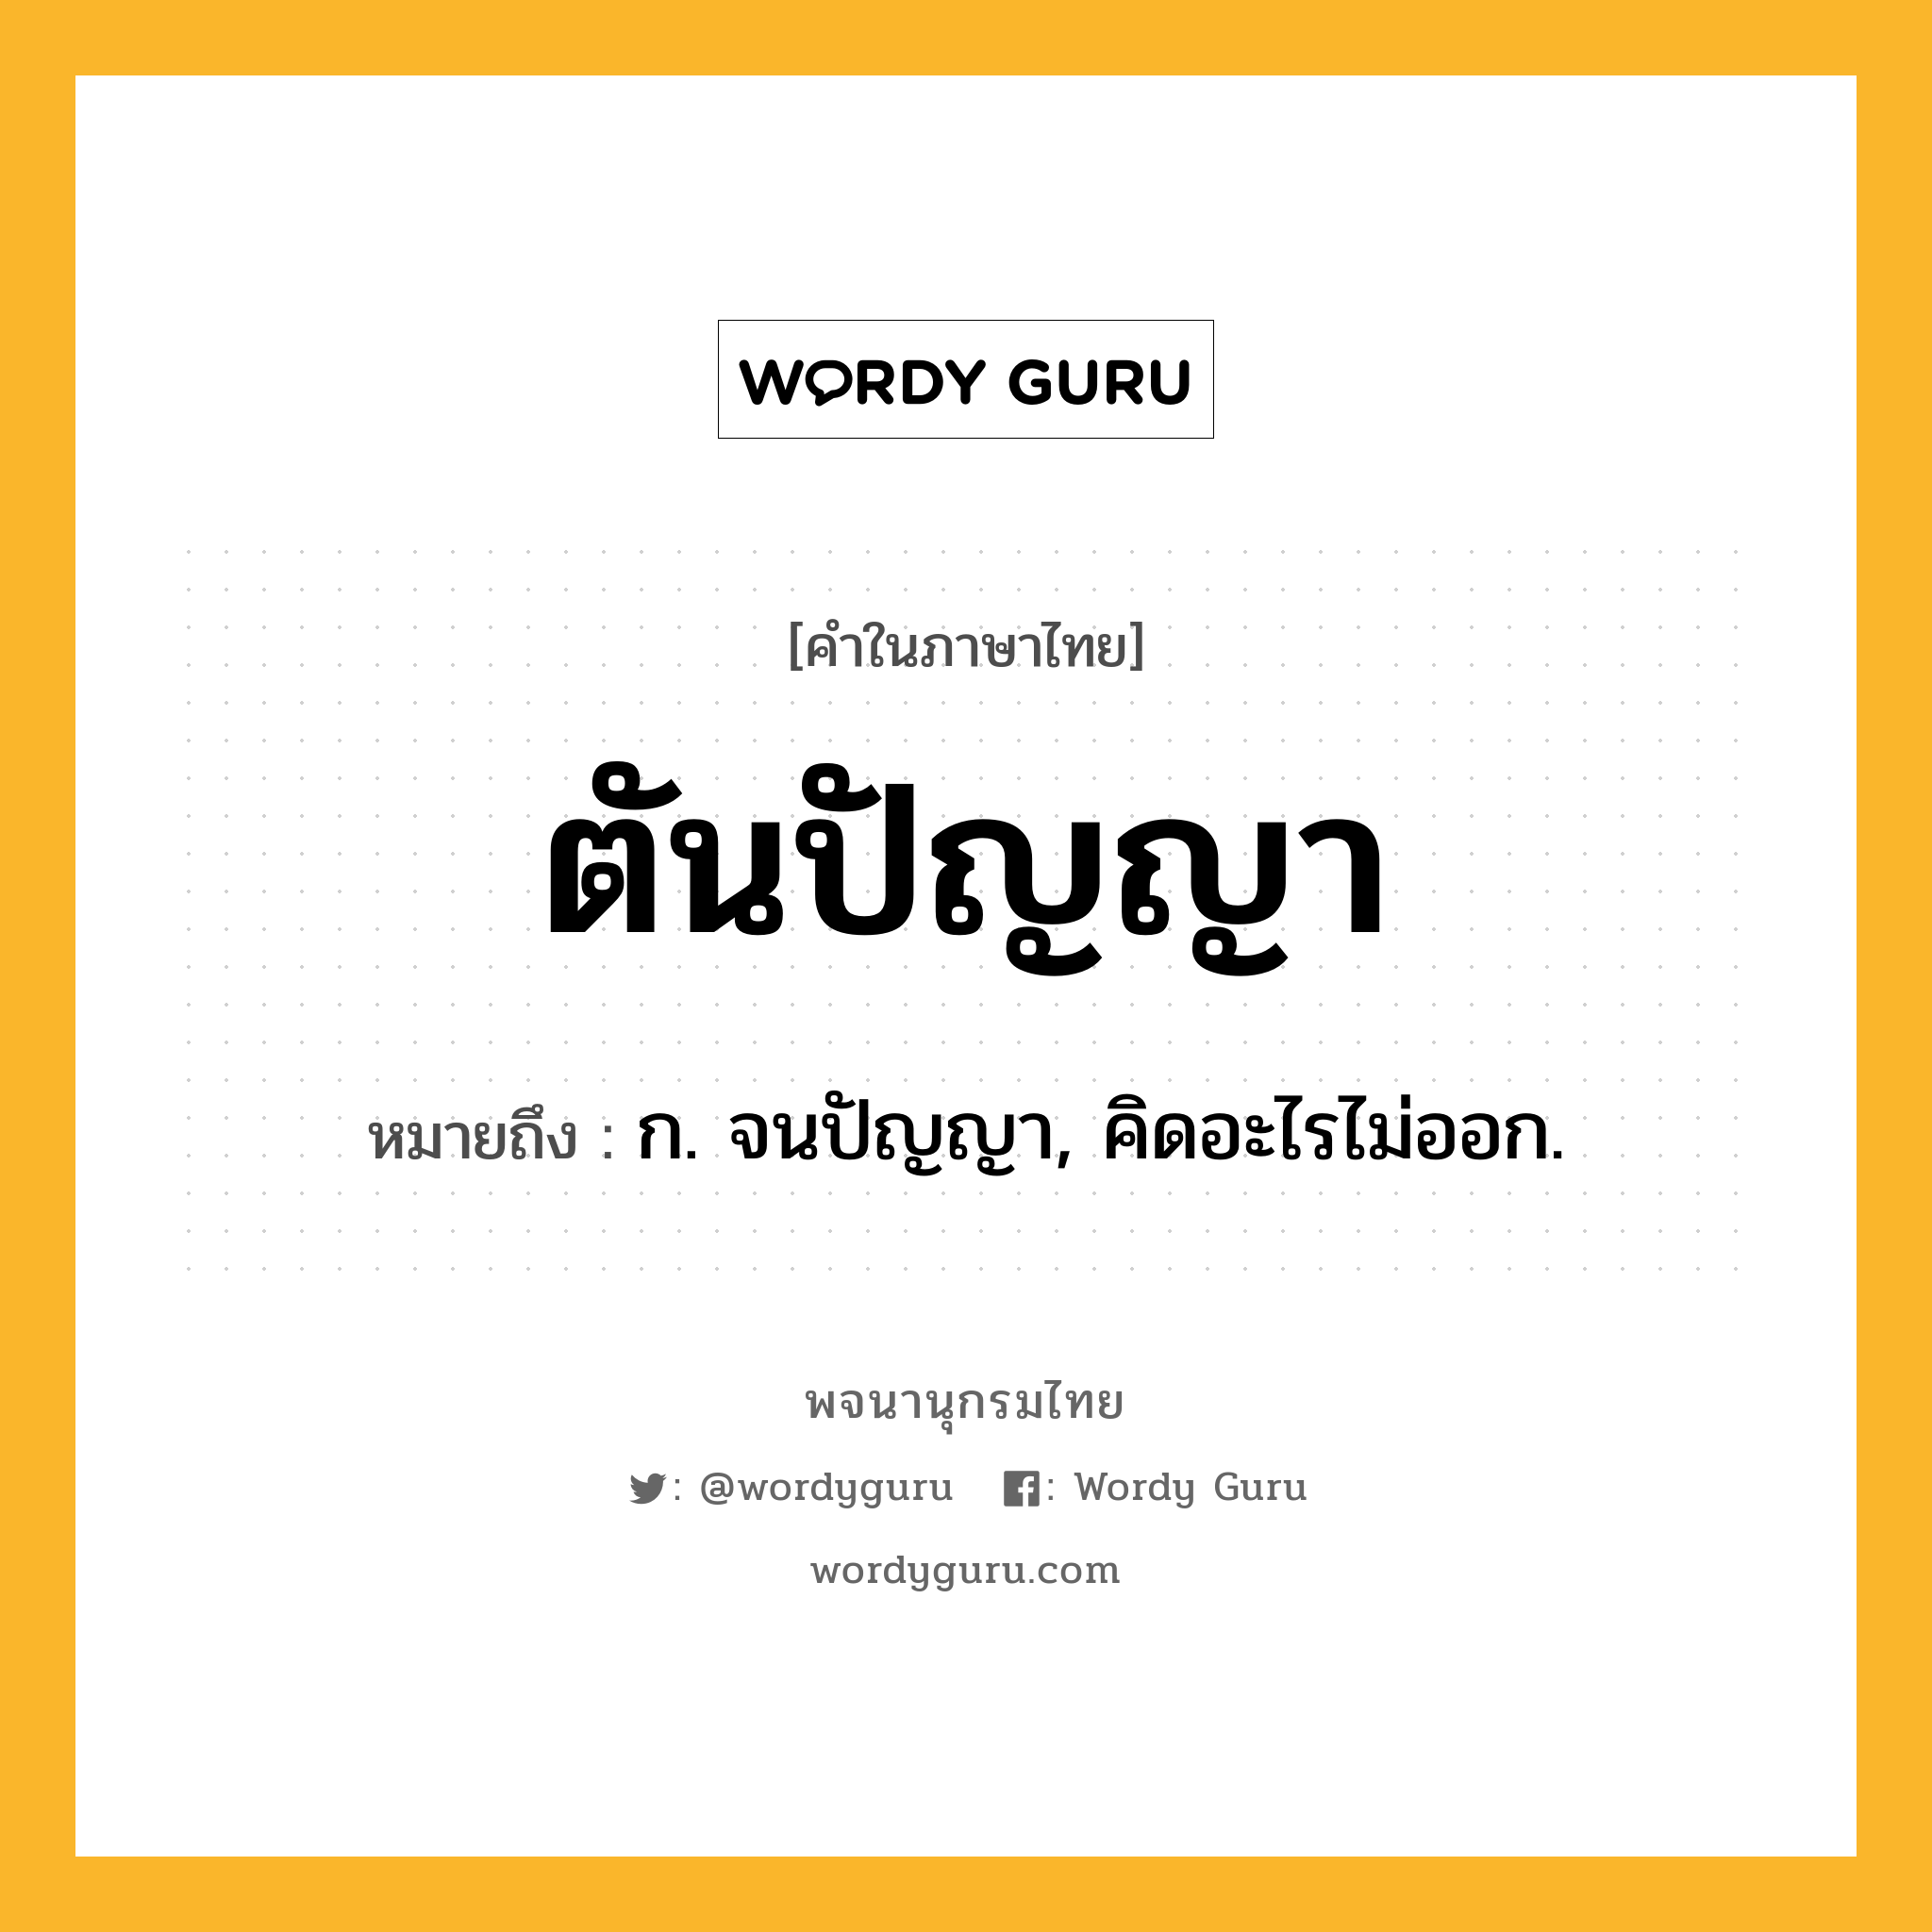 ตันปัญญา หมายถึงอะไร?, คำในภาษาไทย ตันปัญญา หมายถึง ก. จนปัญญา, คิดอะไรไม่ออก.